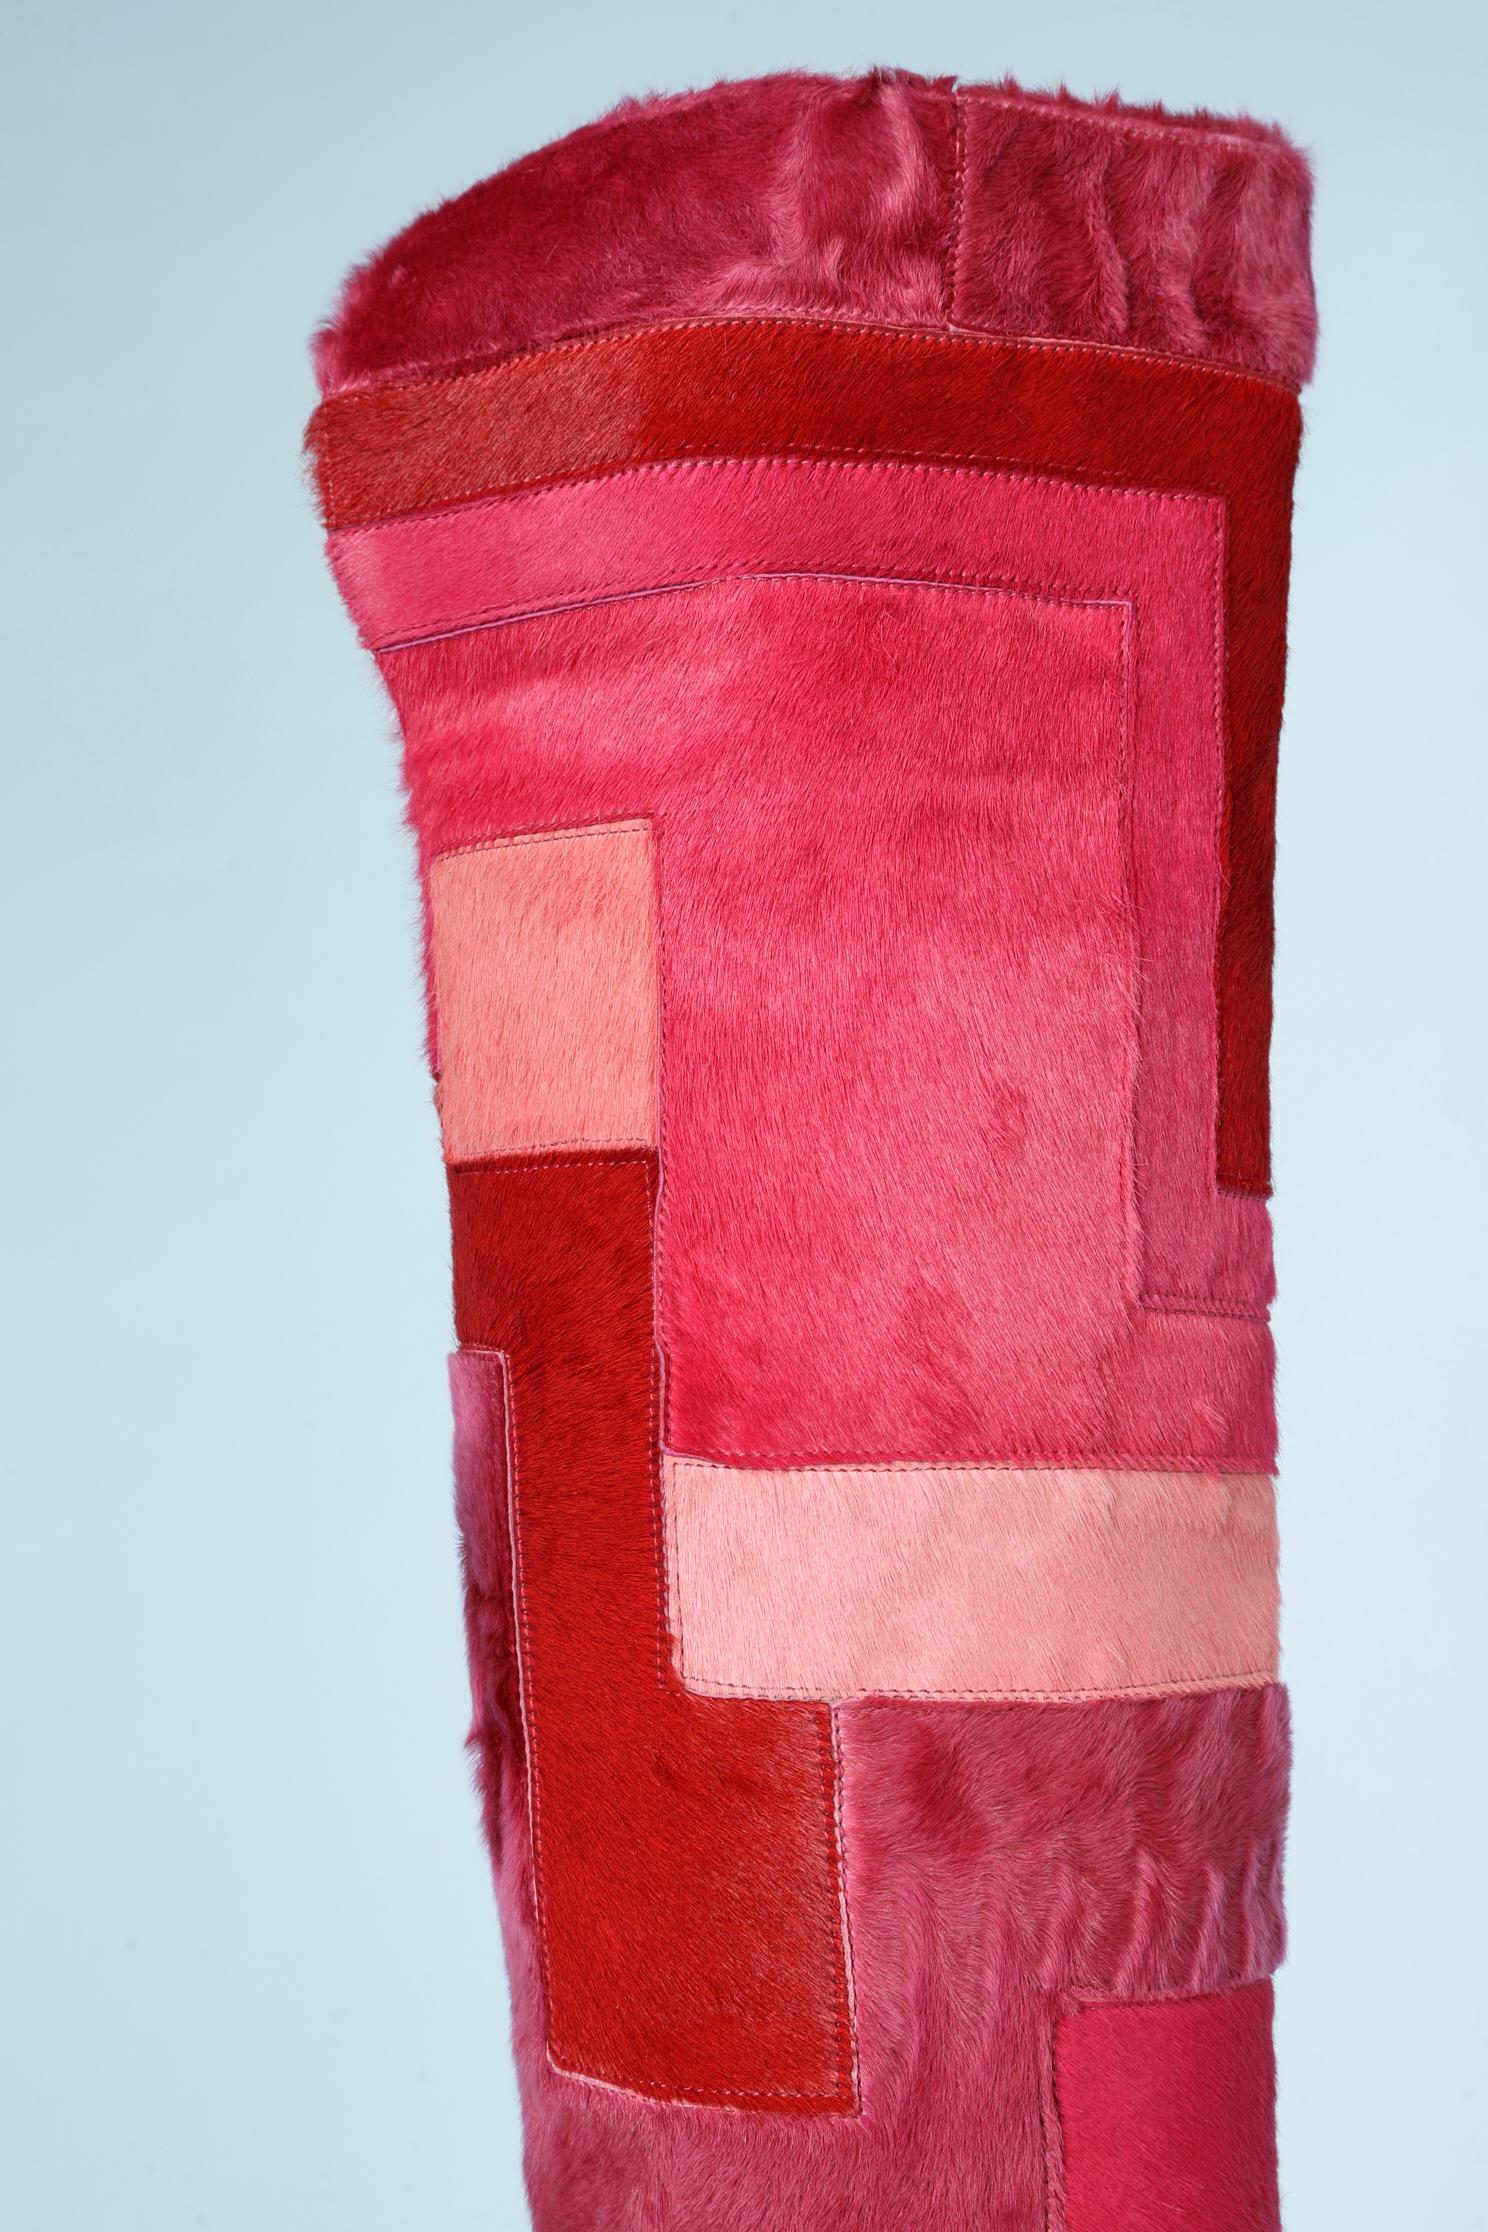 Rosa Degradé-Pelze (Lamm- und Kalbsleder) in Patchwork-Optik, Lederfutter. 
 NEU
Schuhe Größe : 37 ( Italienisch)
Absatzhöhe = 11 cm
Rot lackierter Absatz. 